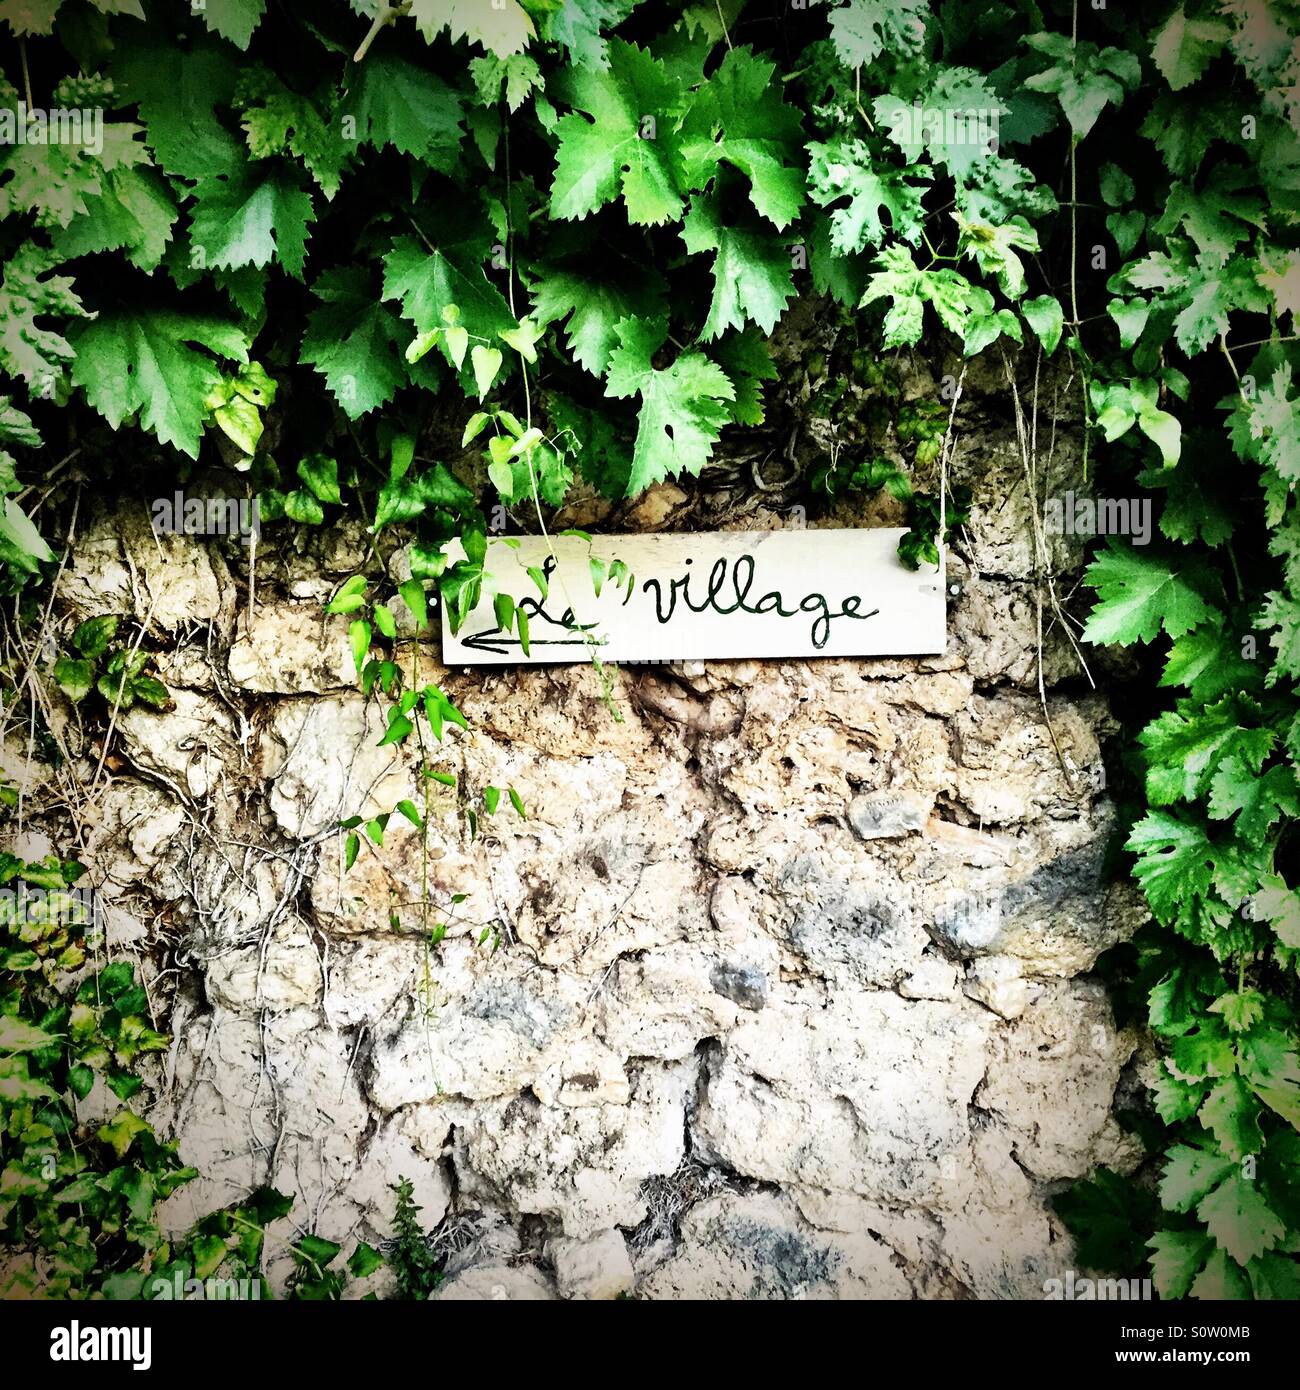 Cubiertas de vid se señal que apunta en dirección de la aldea de Moustiers Sainte Marie, Francia Foto de stock